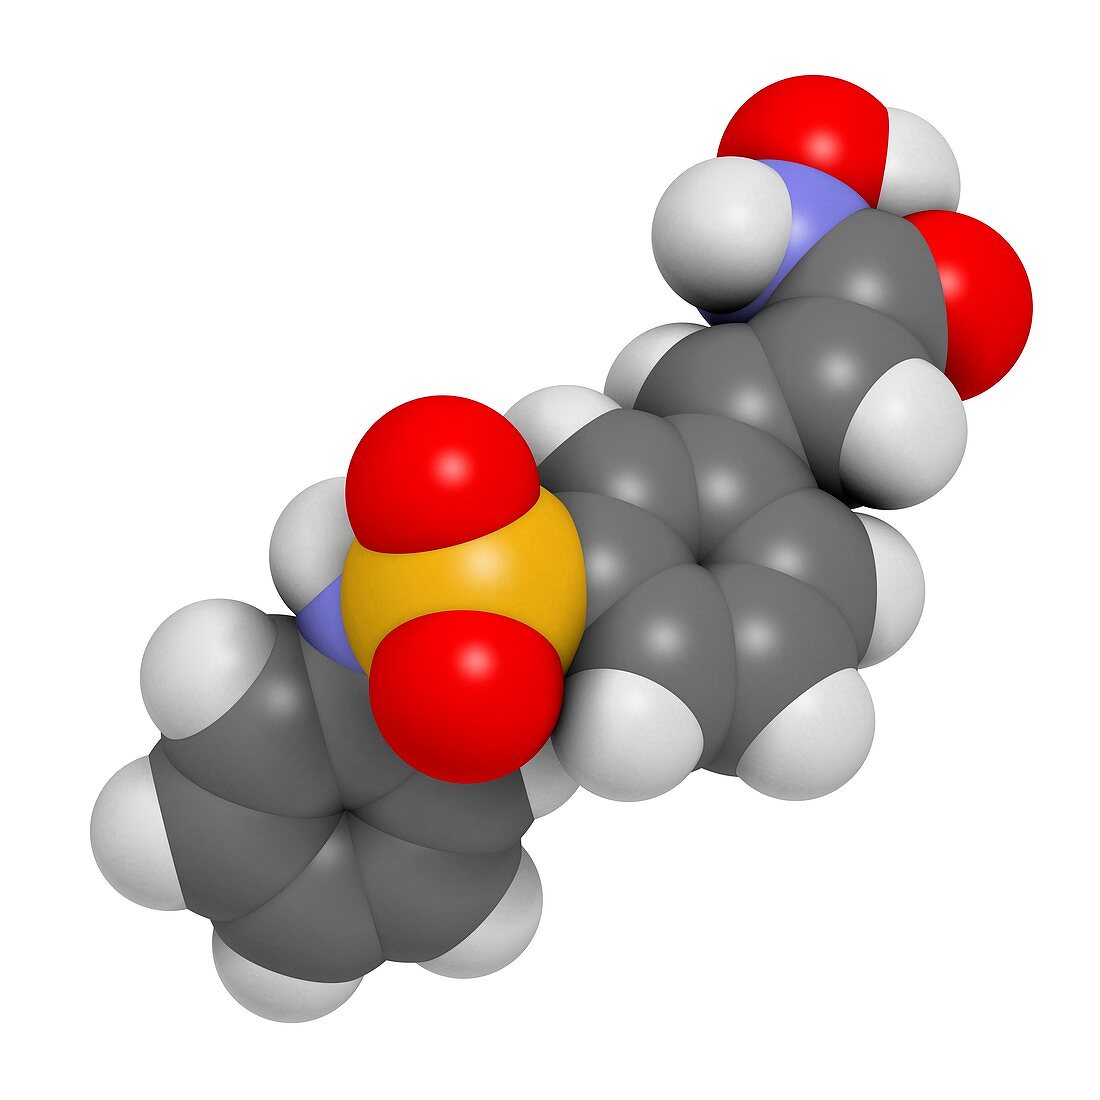 Belinostat cancer drug molecule